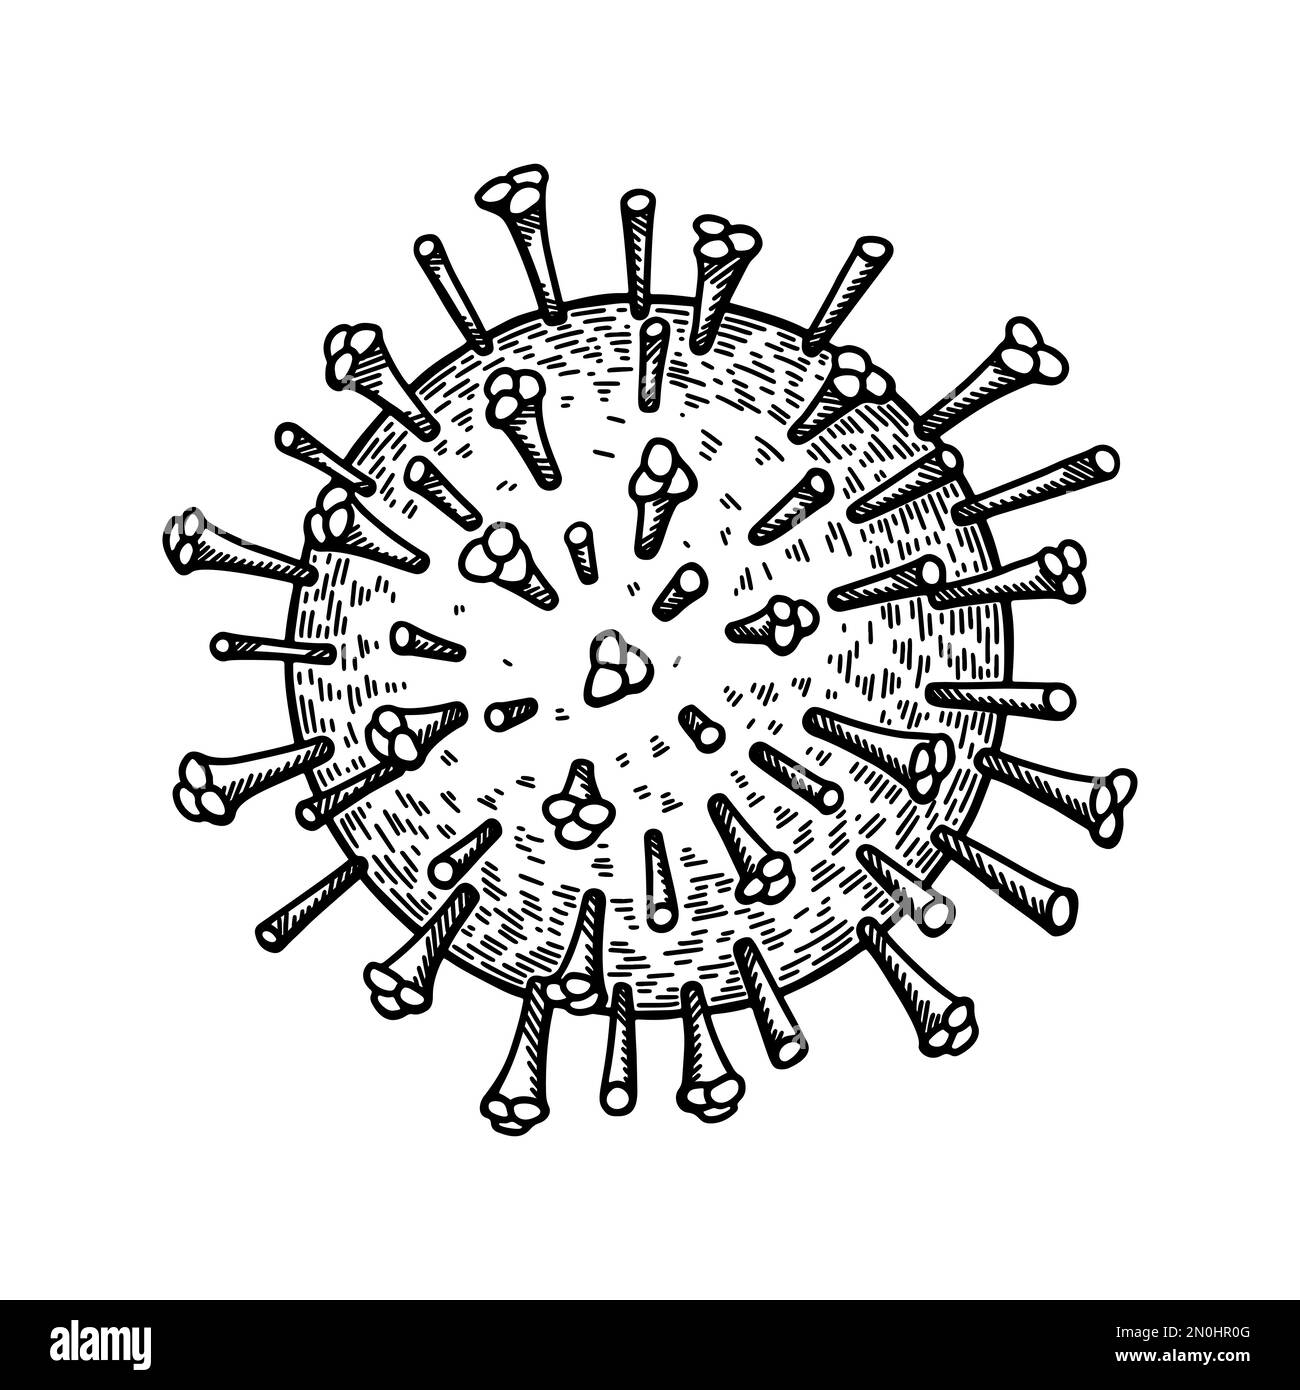 Virus de la grippe isolé sur fond blanc. Illustration vectorielle scientifique détaillée et réaliste, dessinée à la main, en style d'esquisse Illustration de Vecteur